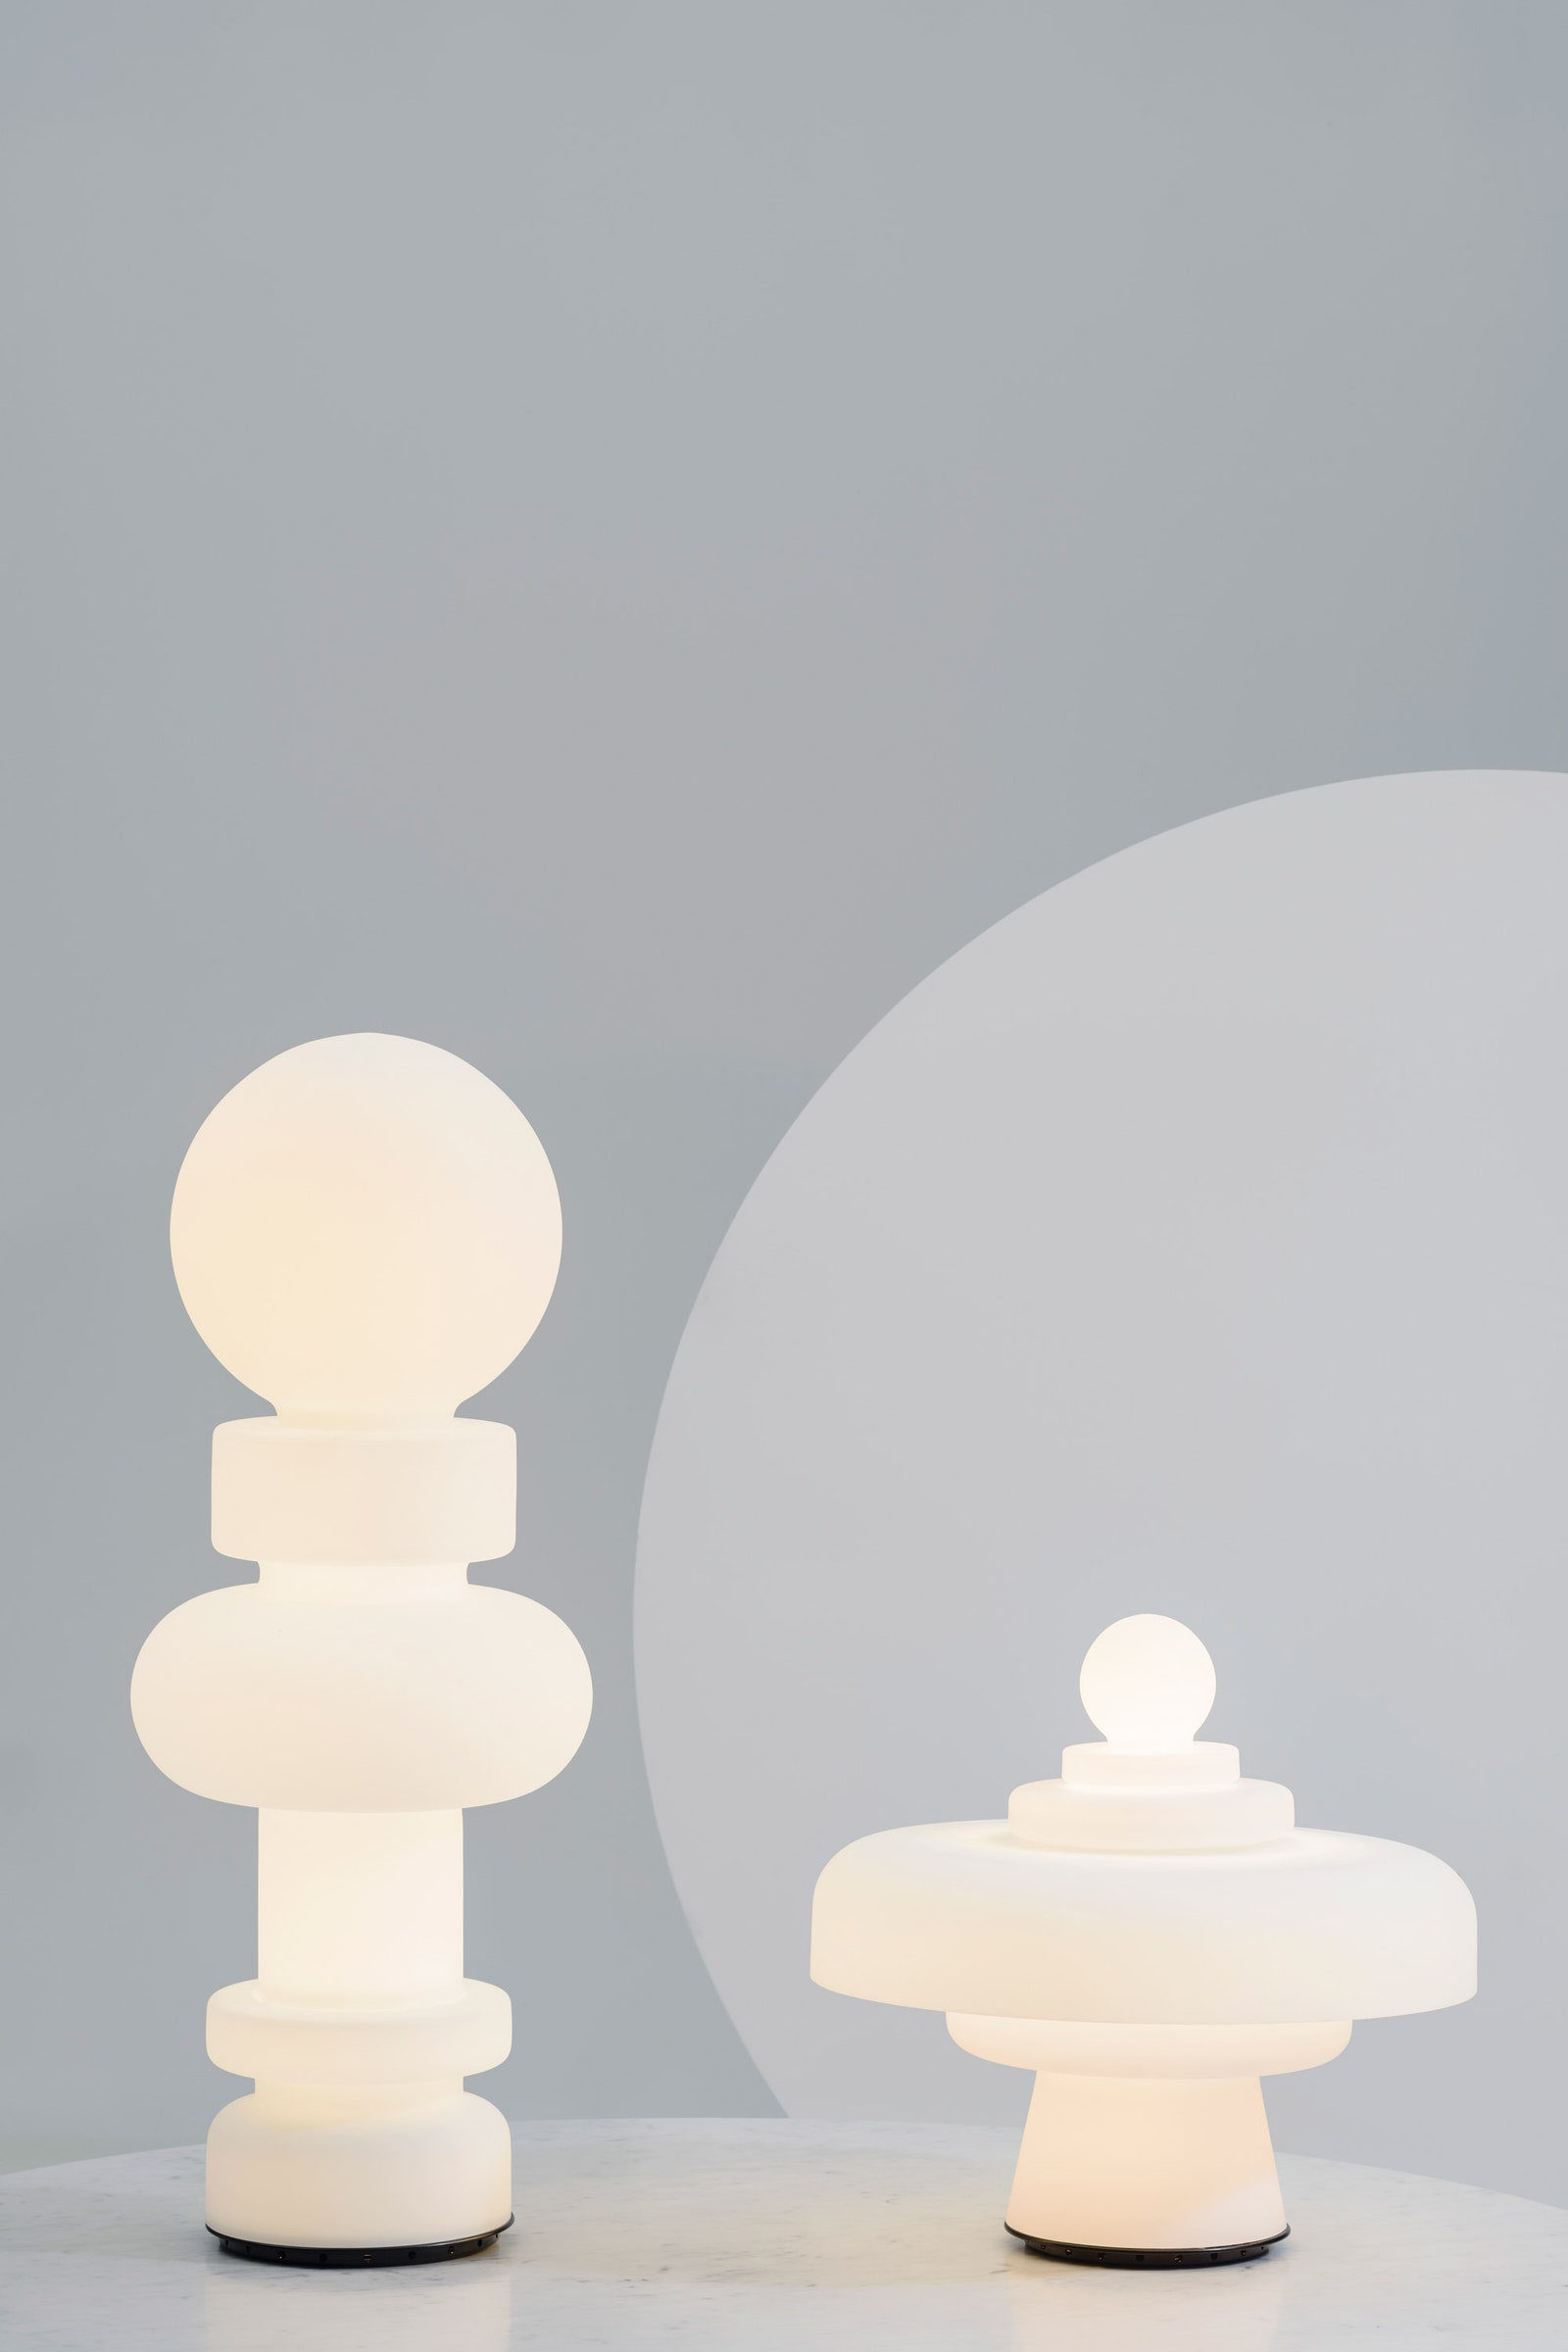 ADLoveSalone FontanaArte переиздала легендарные стеклянные лампы по дизайну Бобо Пикколи